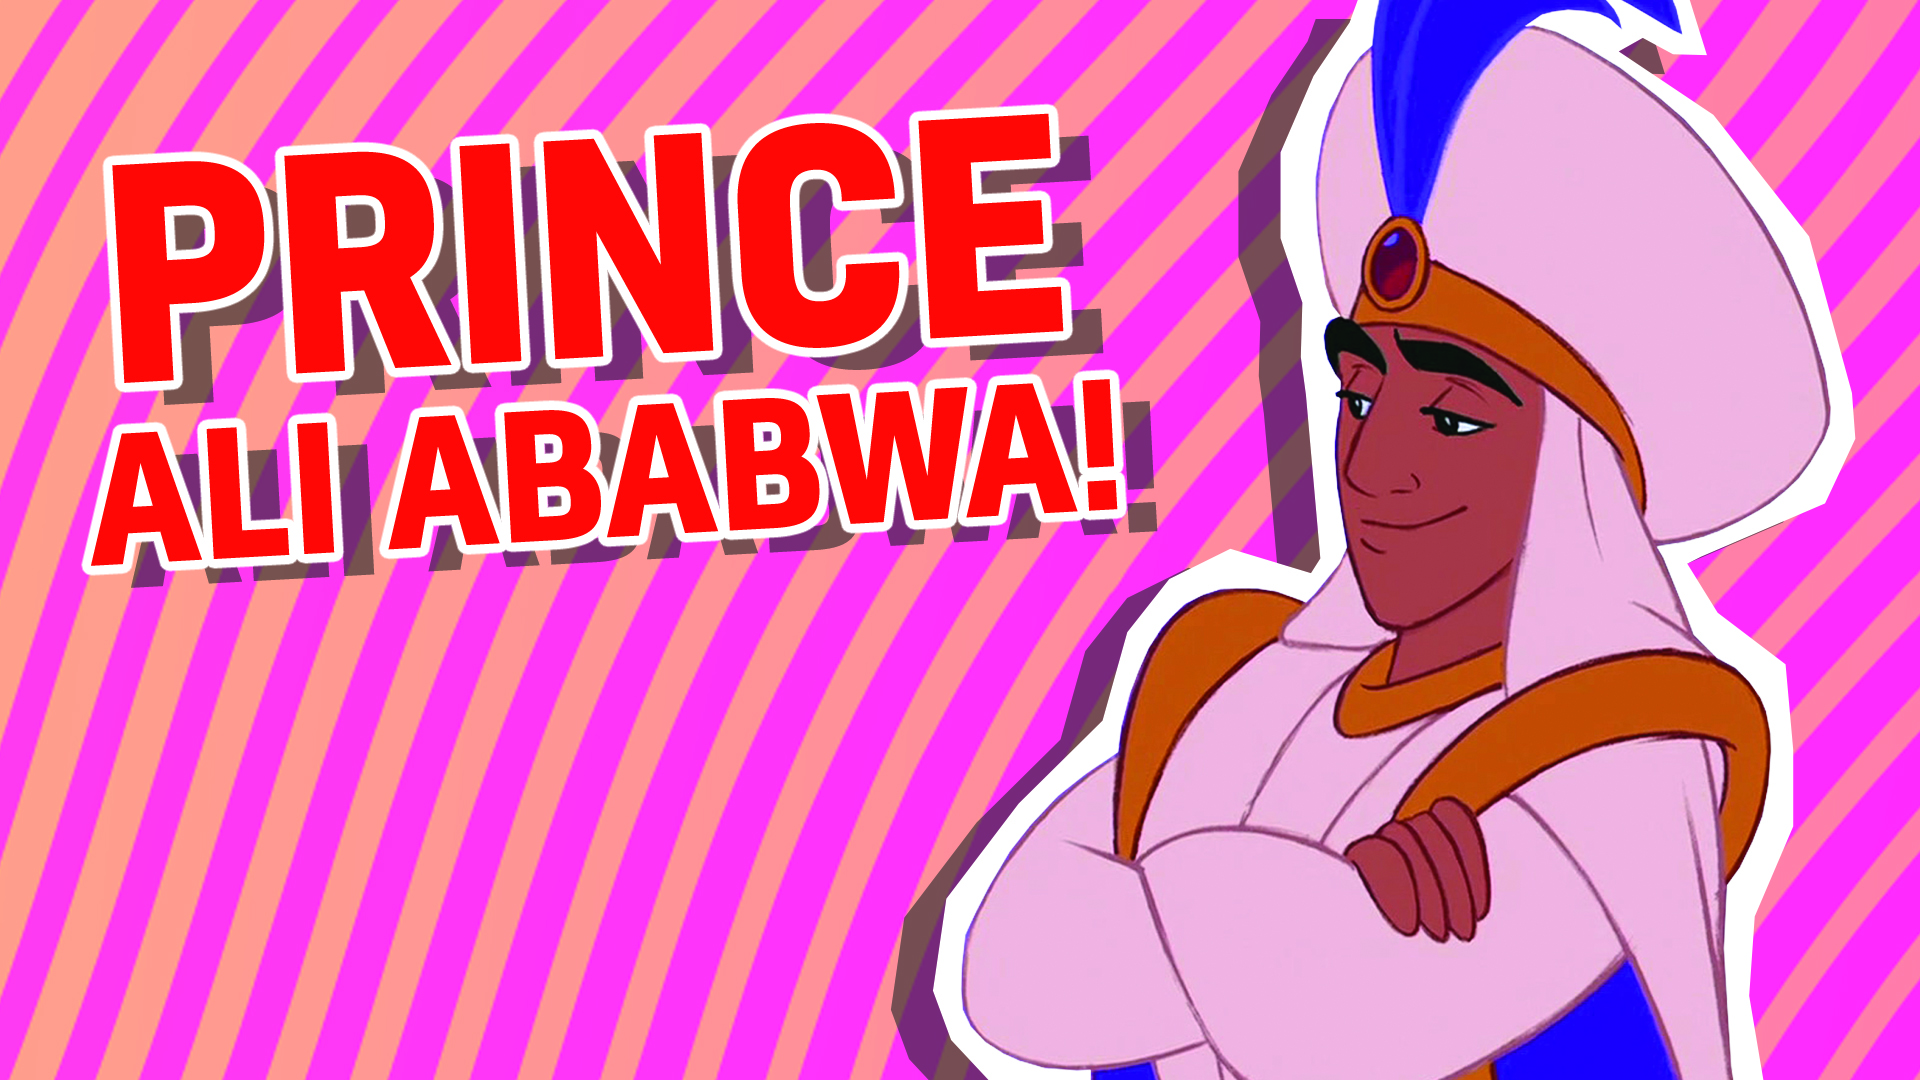 Prince Ali Ababwa aka Aladdin